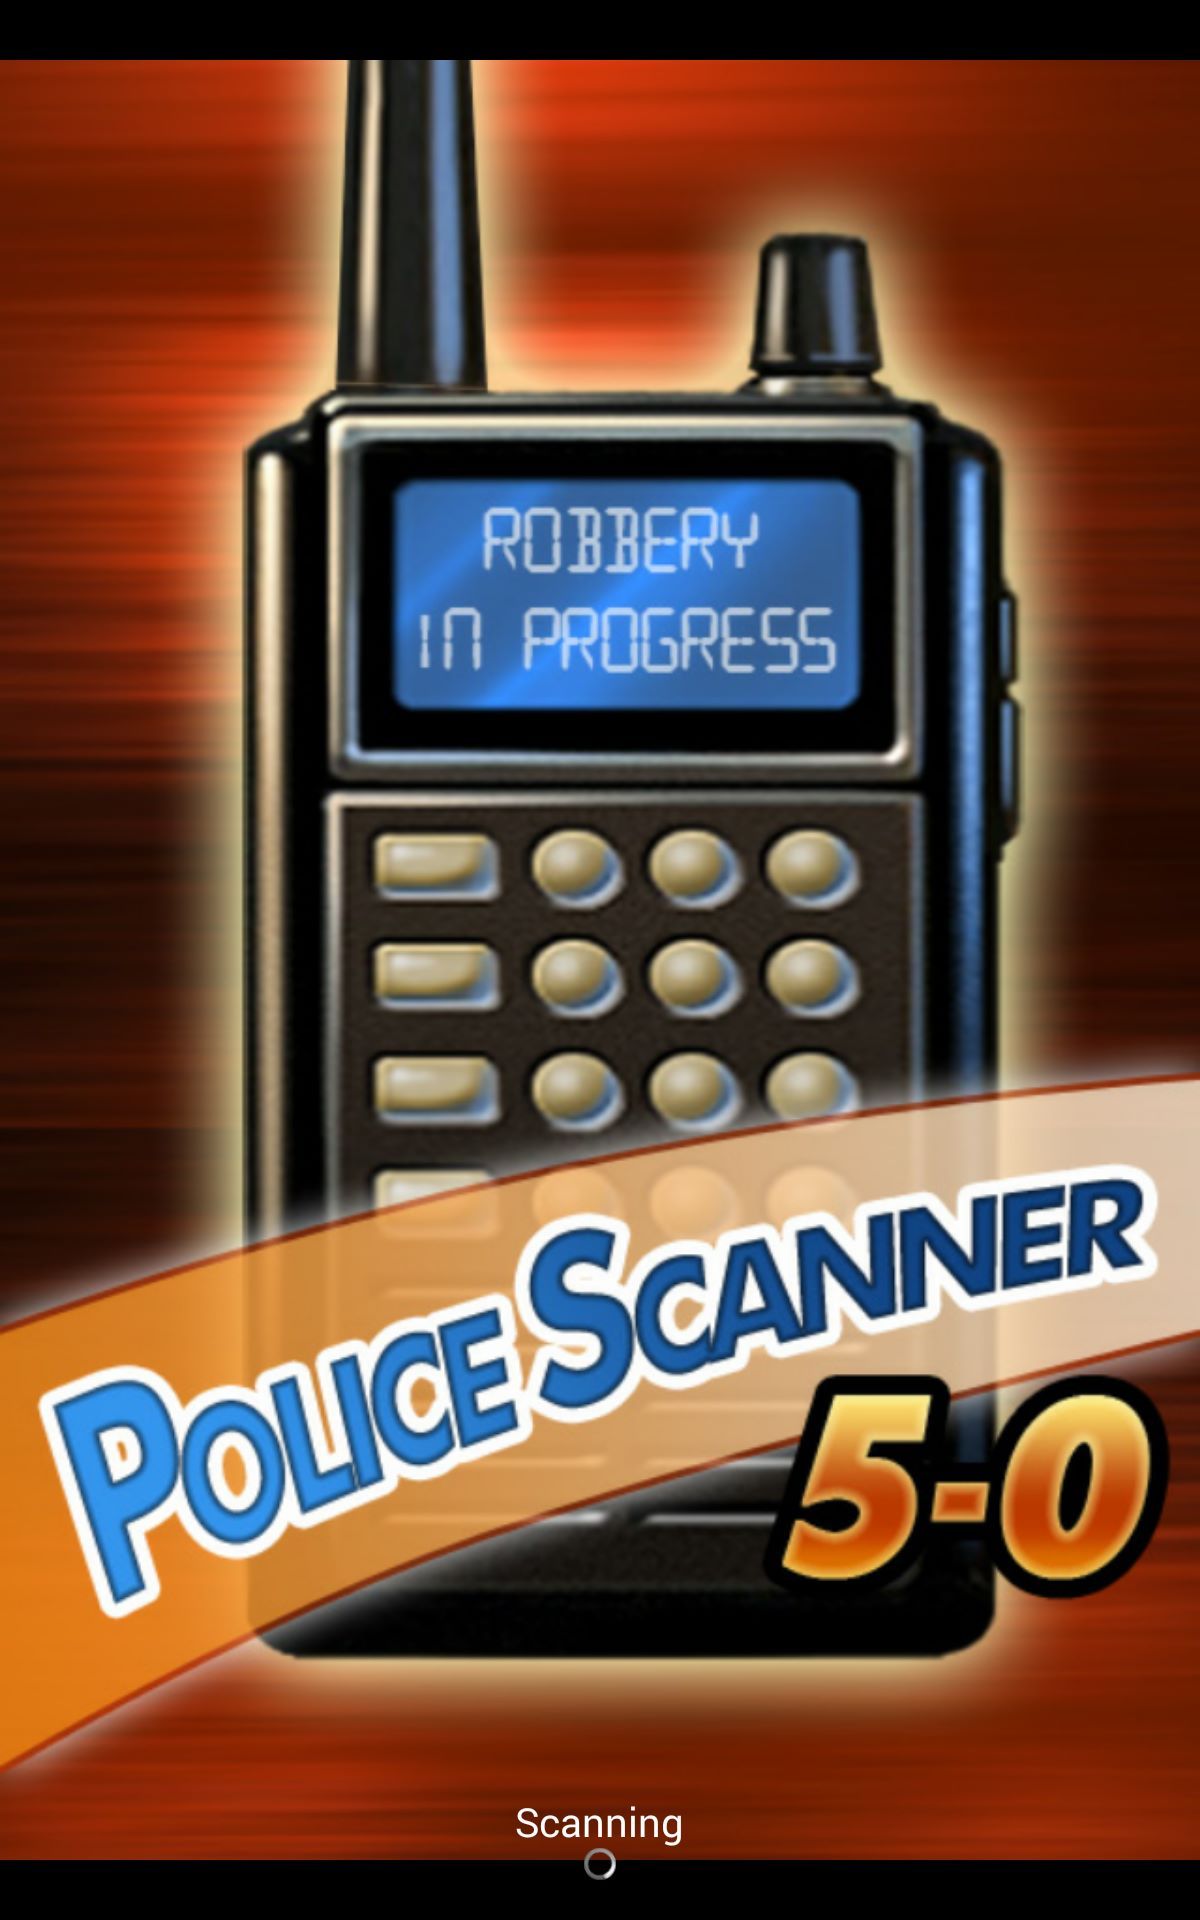 Police Scanner 5-0